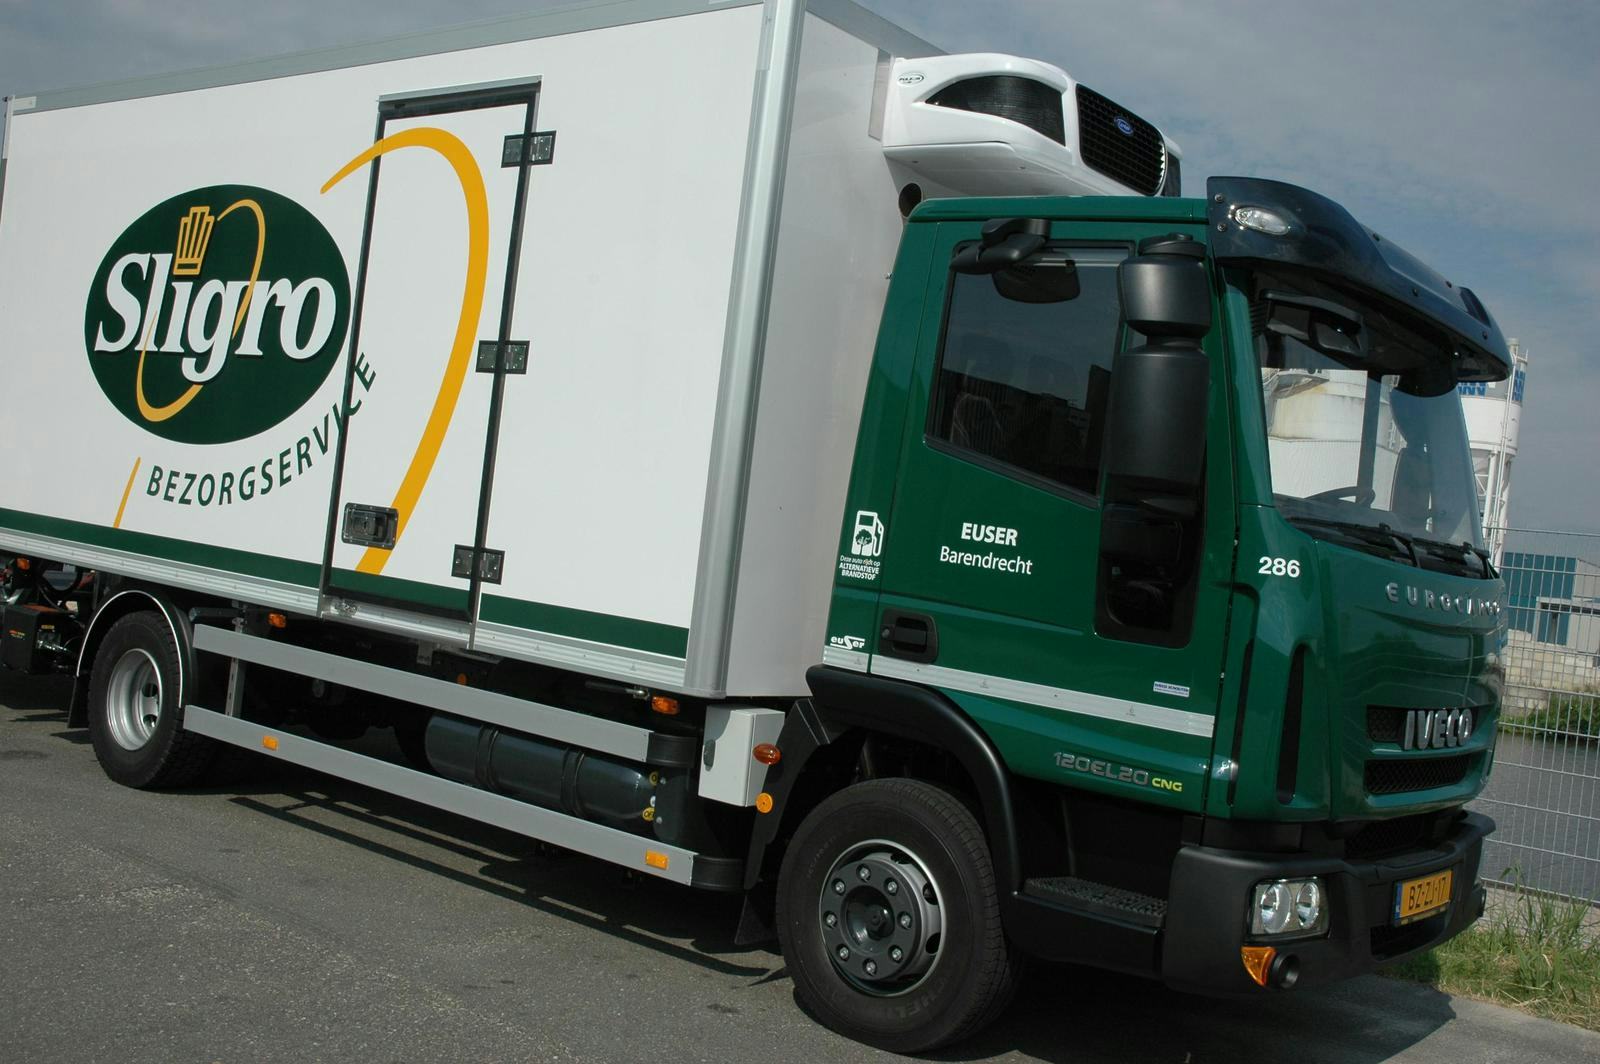 Sligro zet schone truck in voor stadsdistributie